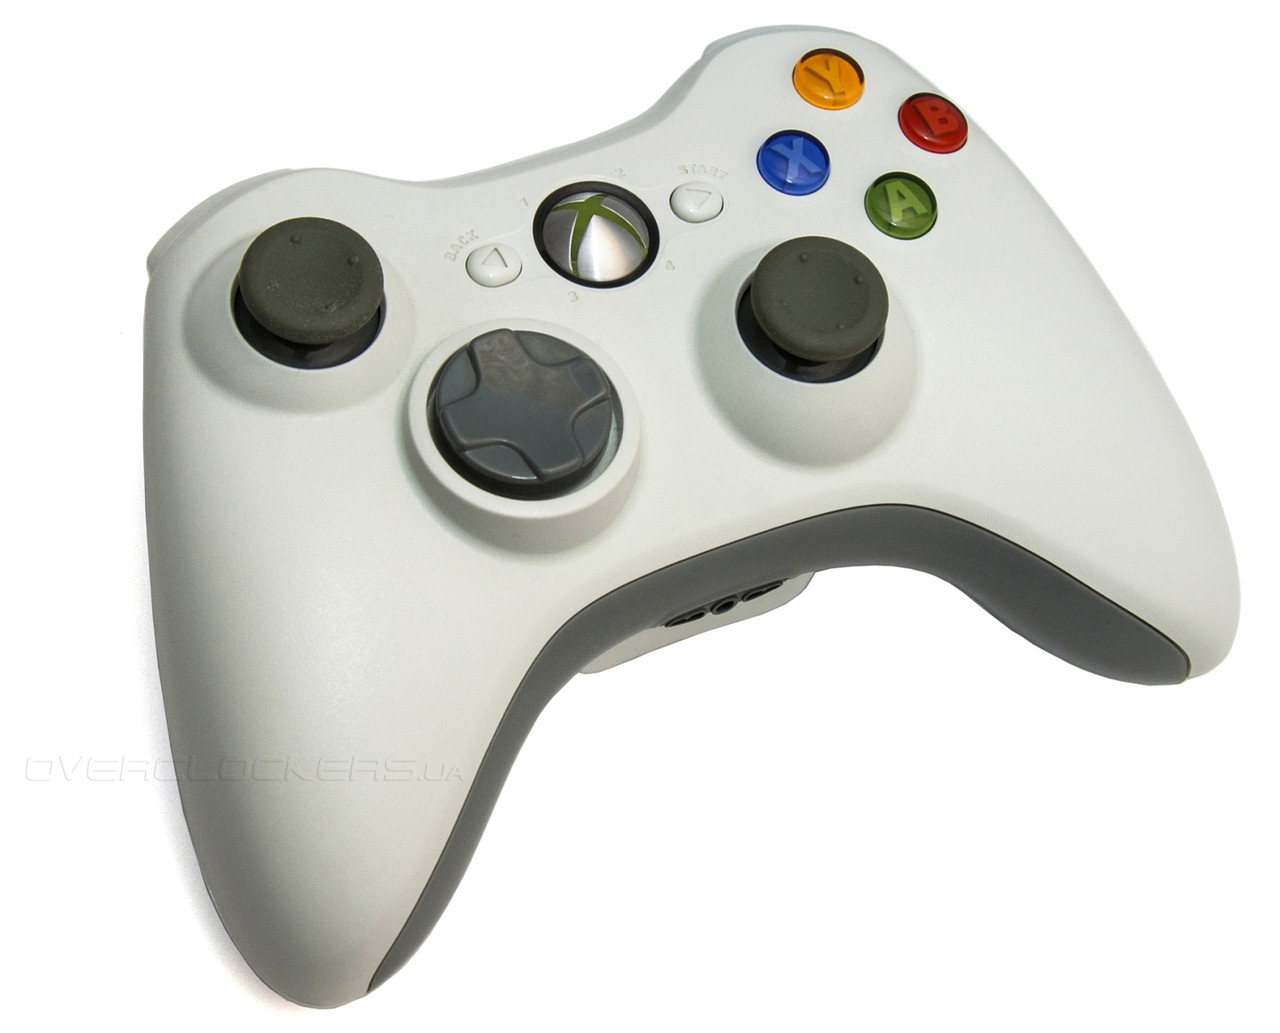 Геймпад Xbox 360 Microsoft беспроводной (копия) белый, фото 1